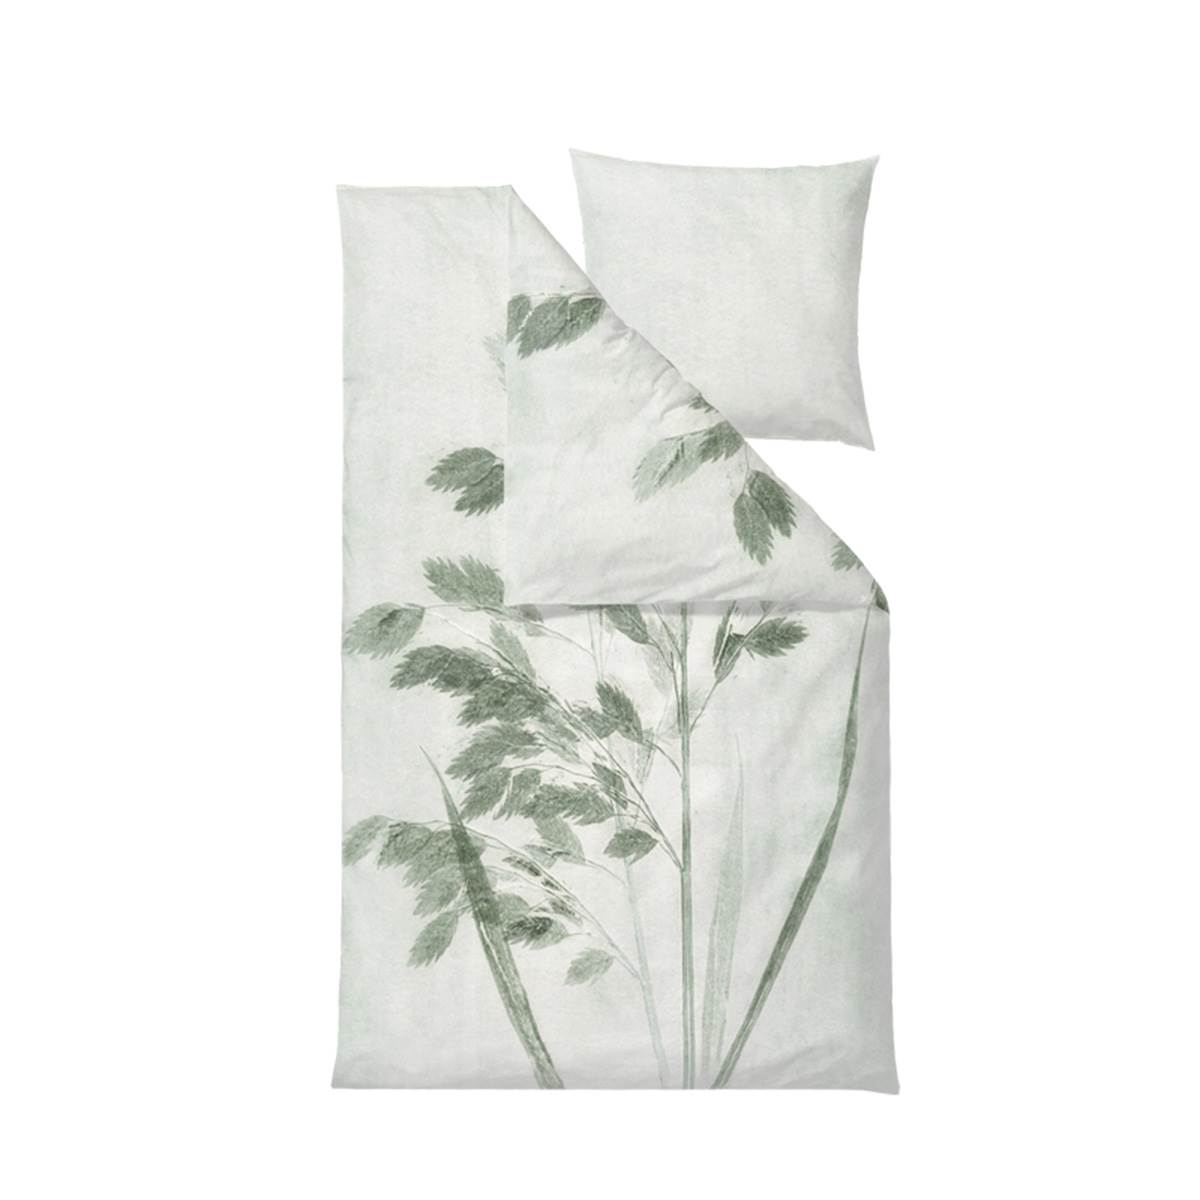 Shop Södahl sengetøj her Oat grass Jade green